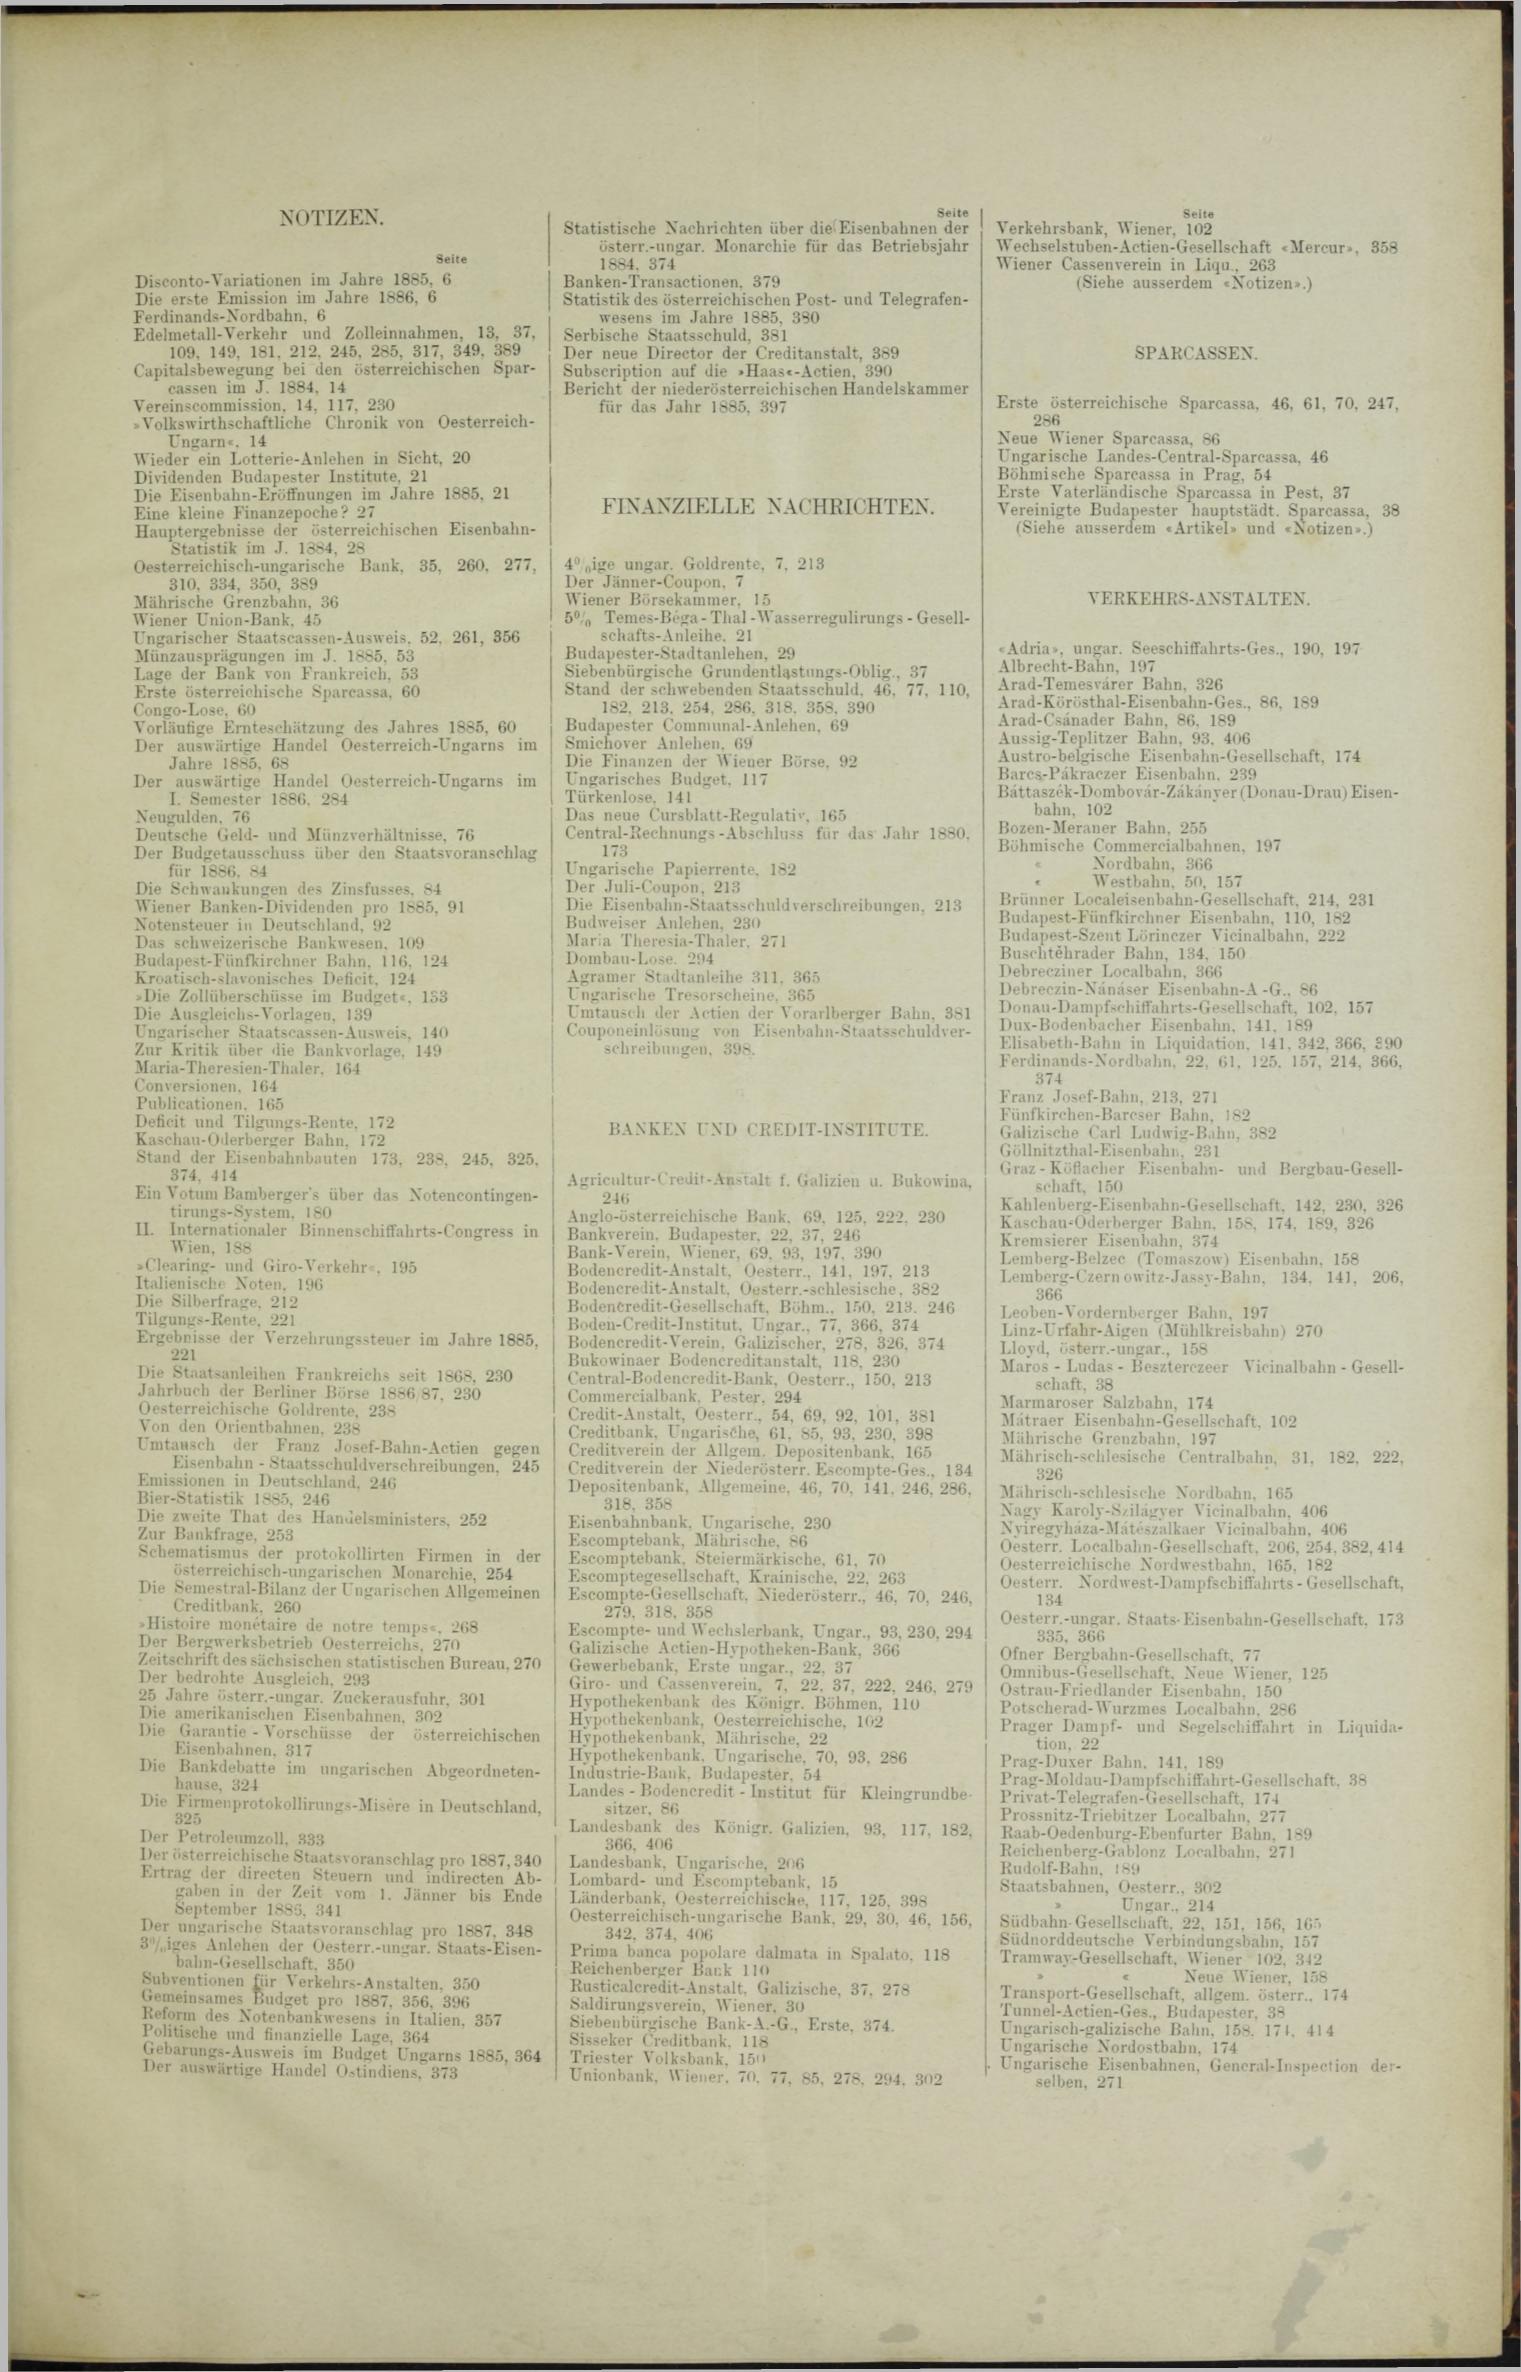 Der Tresor 23.09.1886 - Seite 11